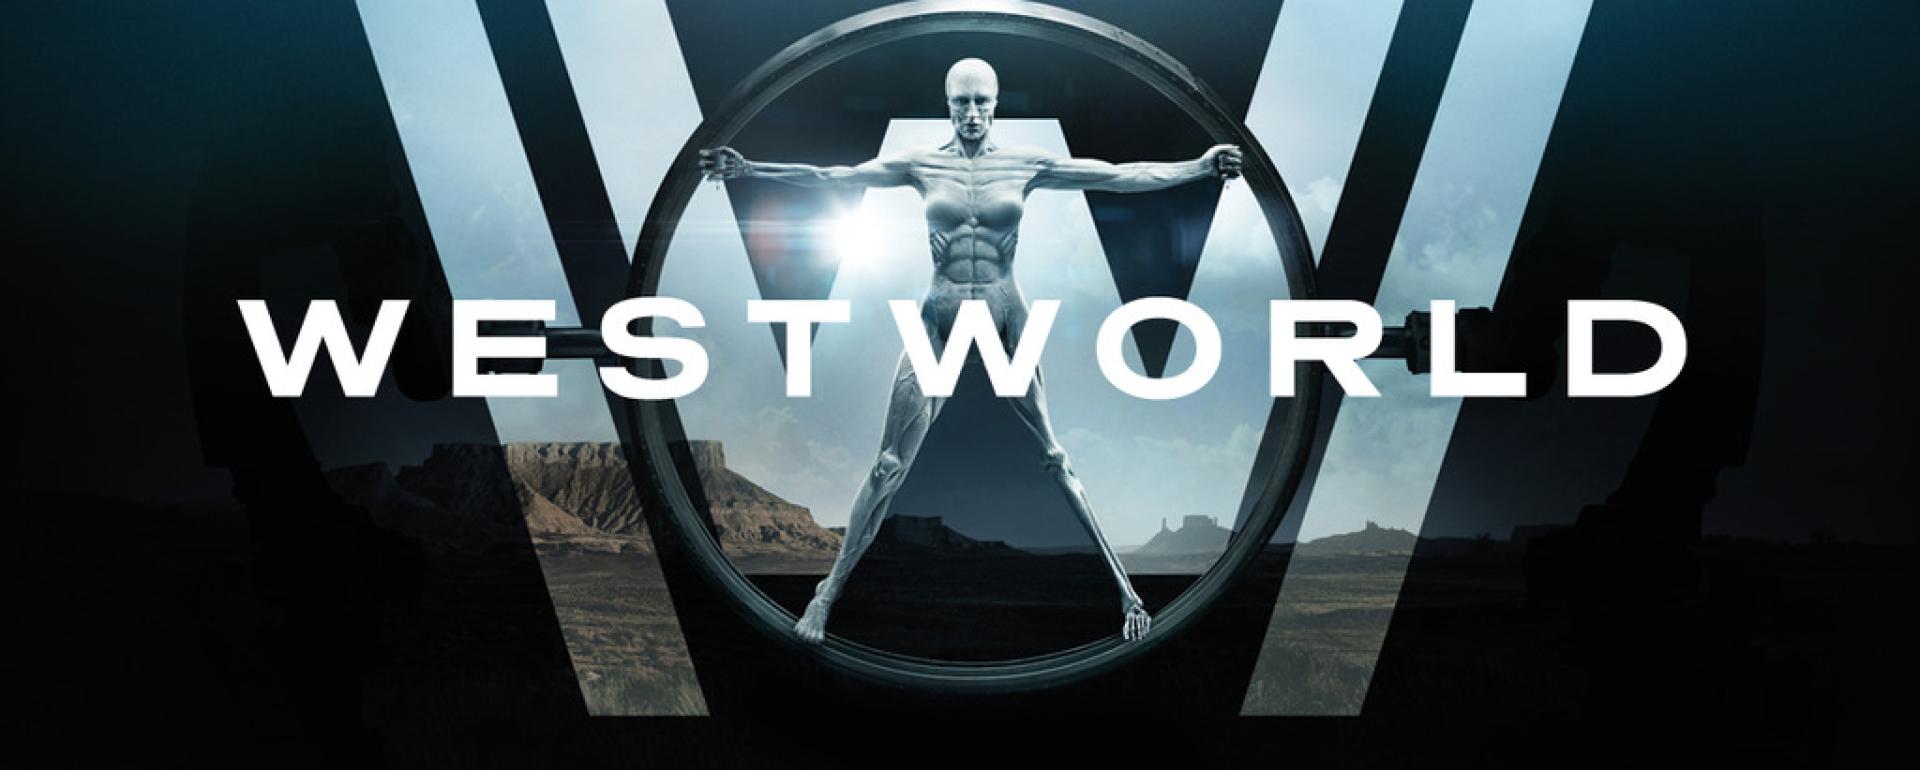 Westworld: 1. évad értékelése